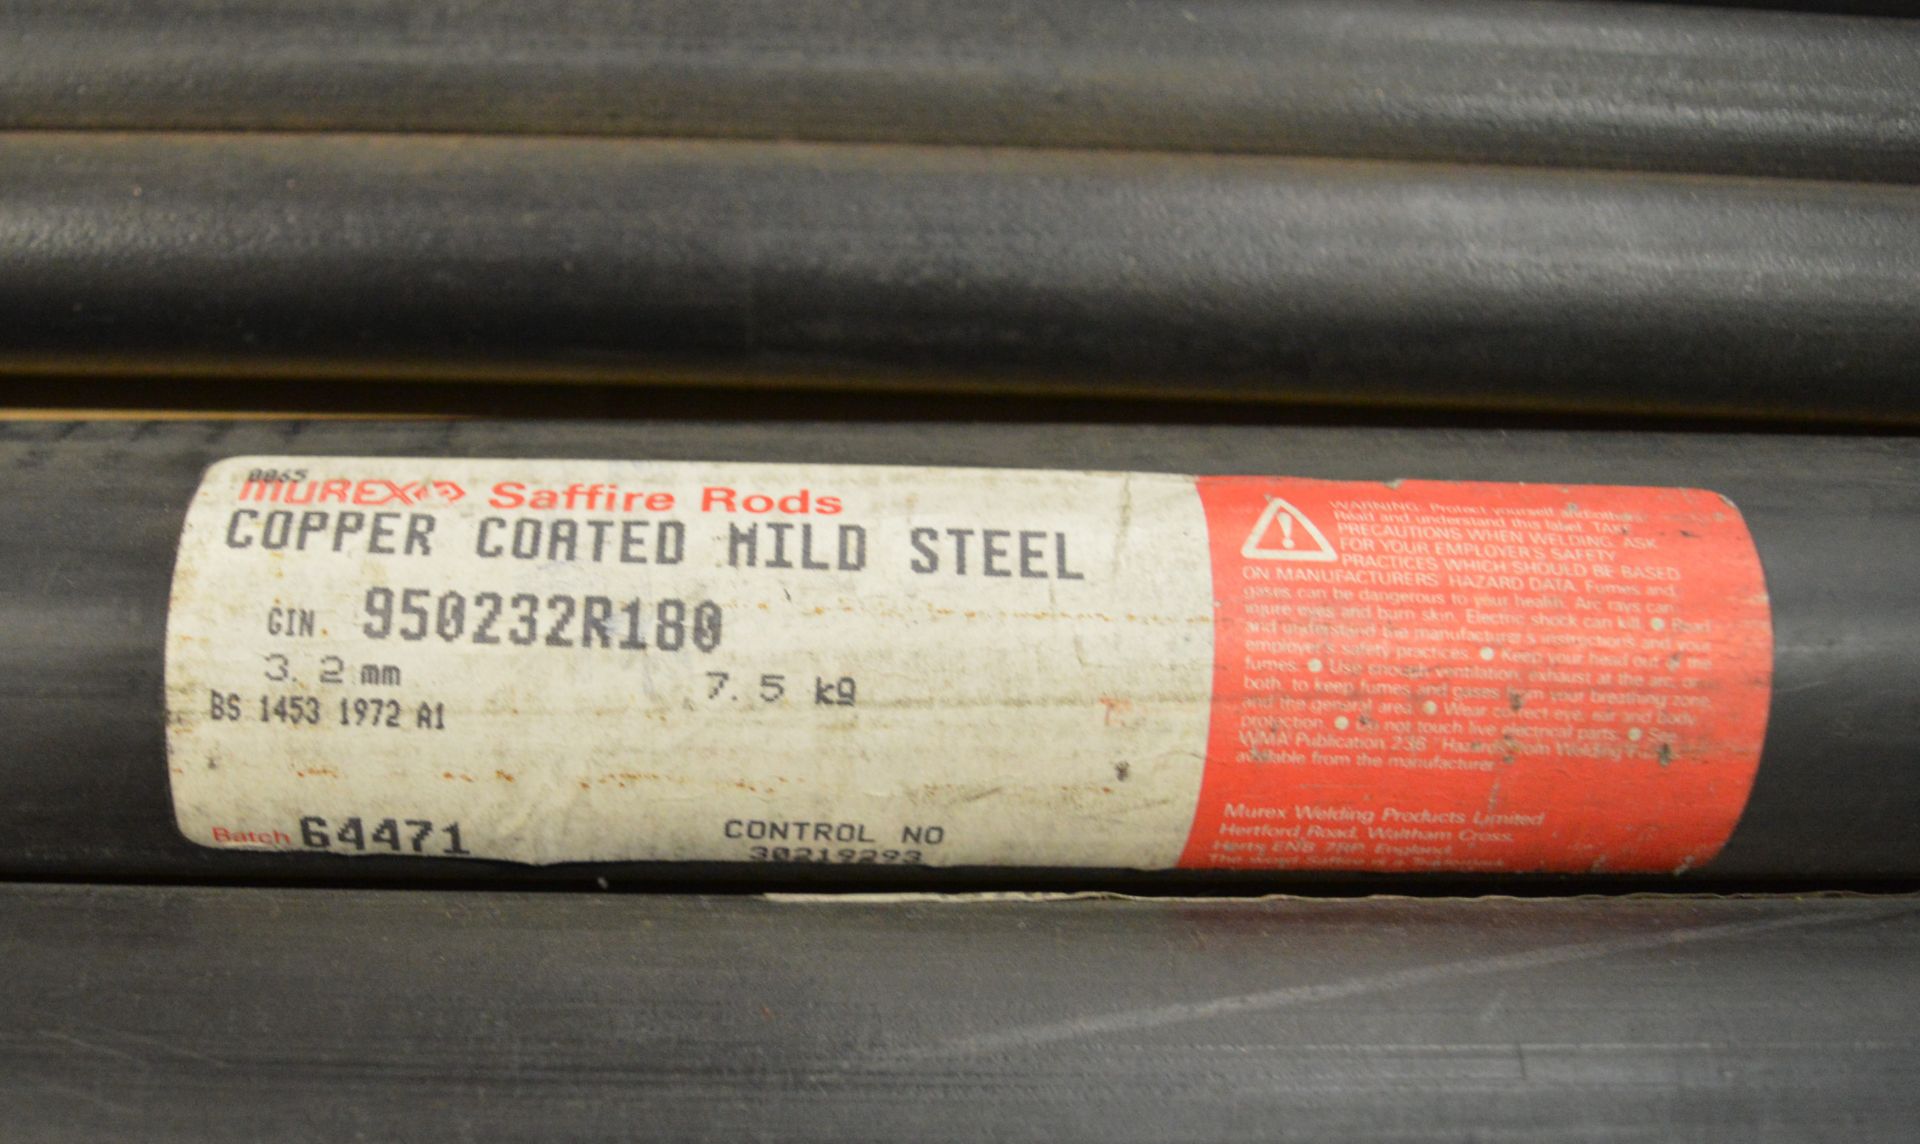 20x Copper Coated Mild Steel Welding Rods 950232R180 3.2mm x 1000mm - Image 3 of 3